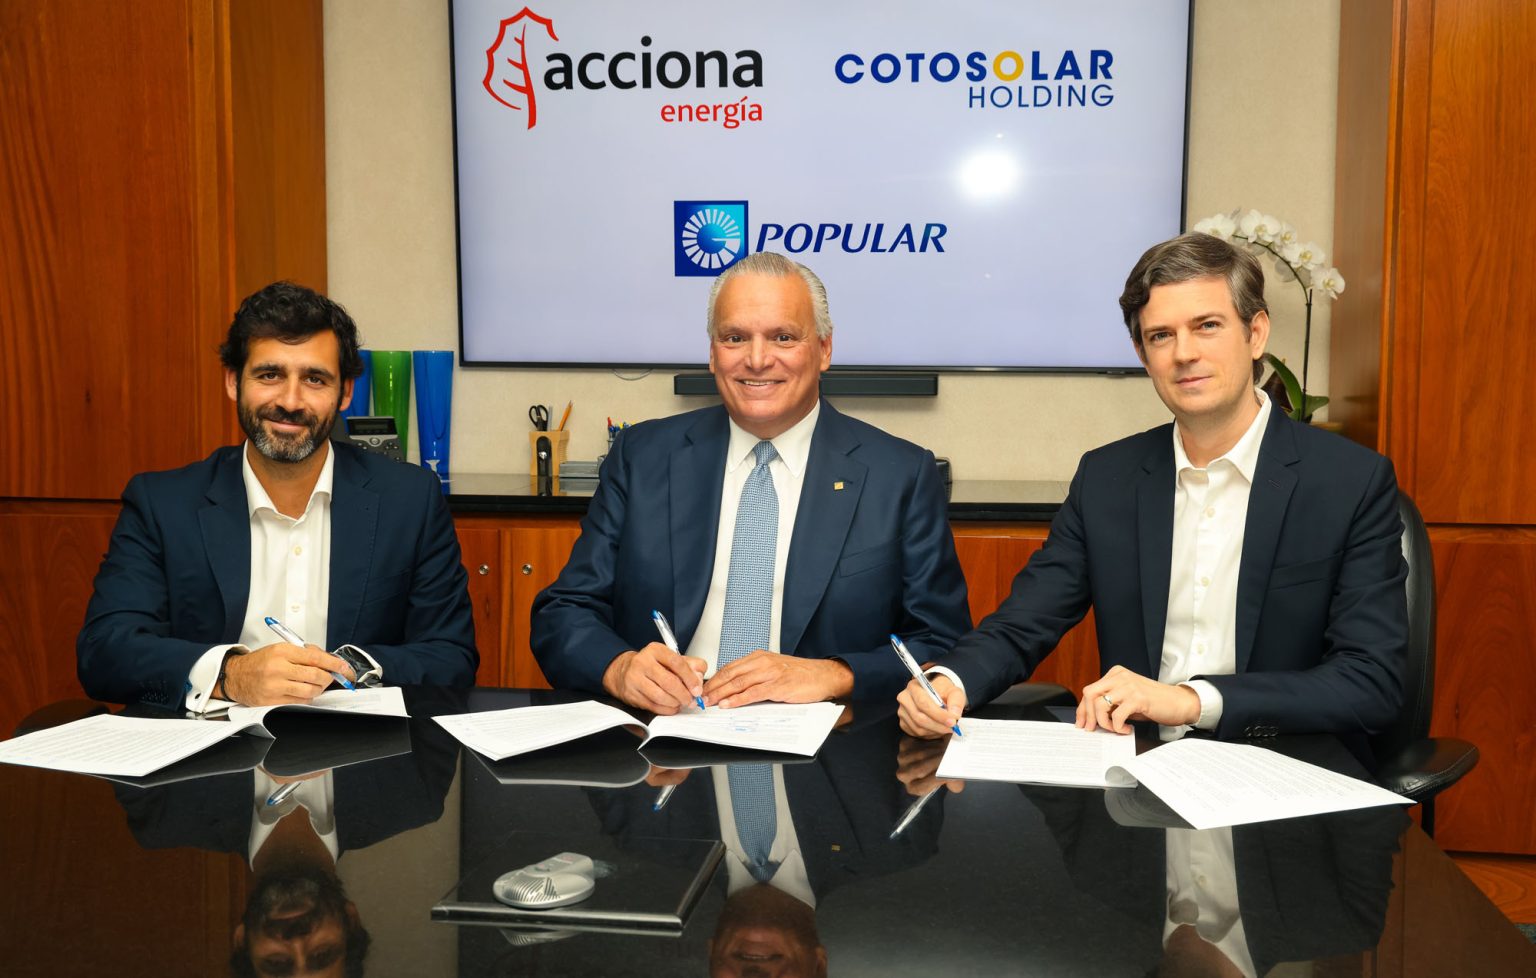 Popular ACCIONA Energia y Cotosolar Holding cierran inversion fotovoltaica y acuerdo de sostenibilidad